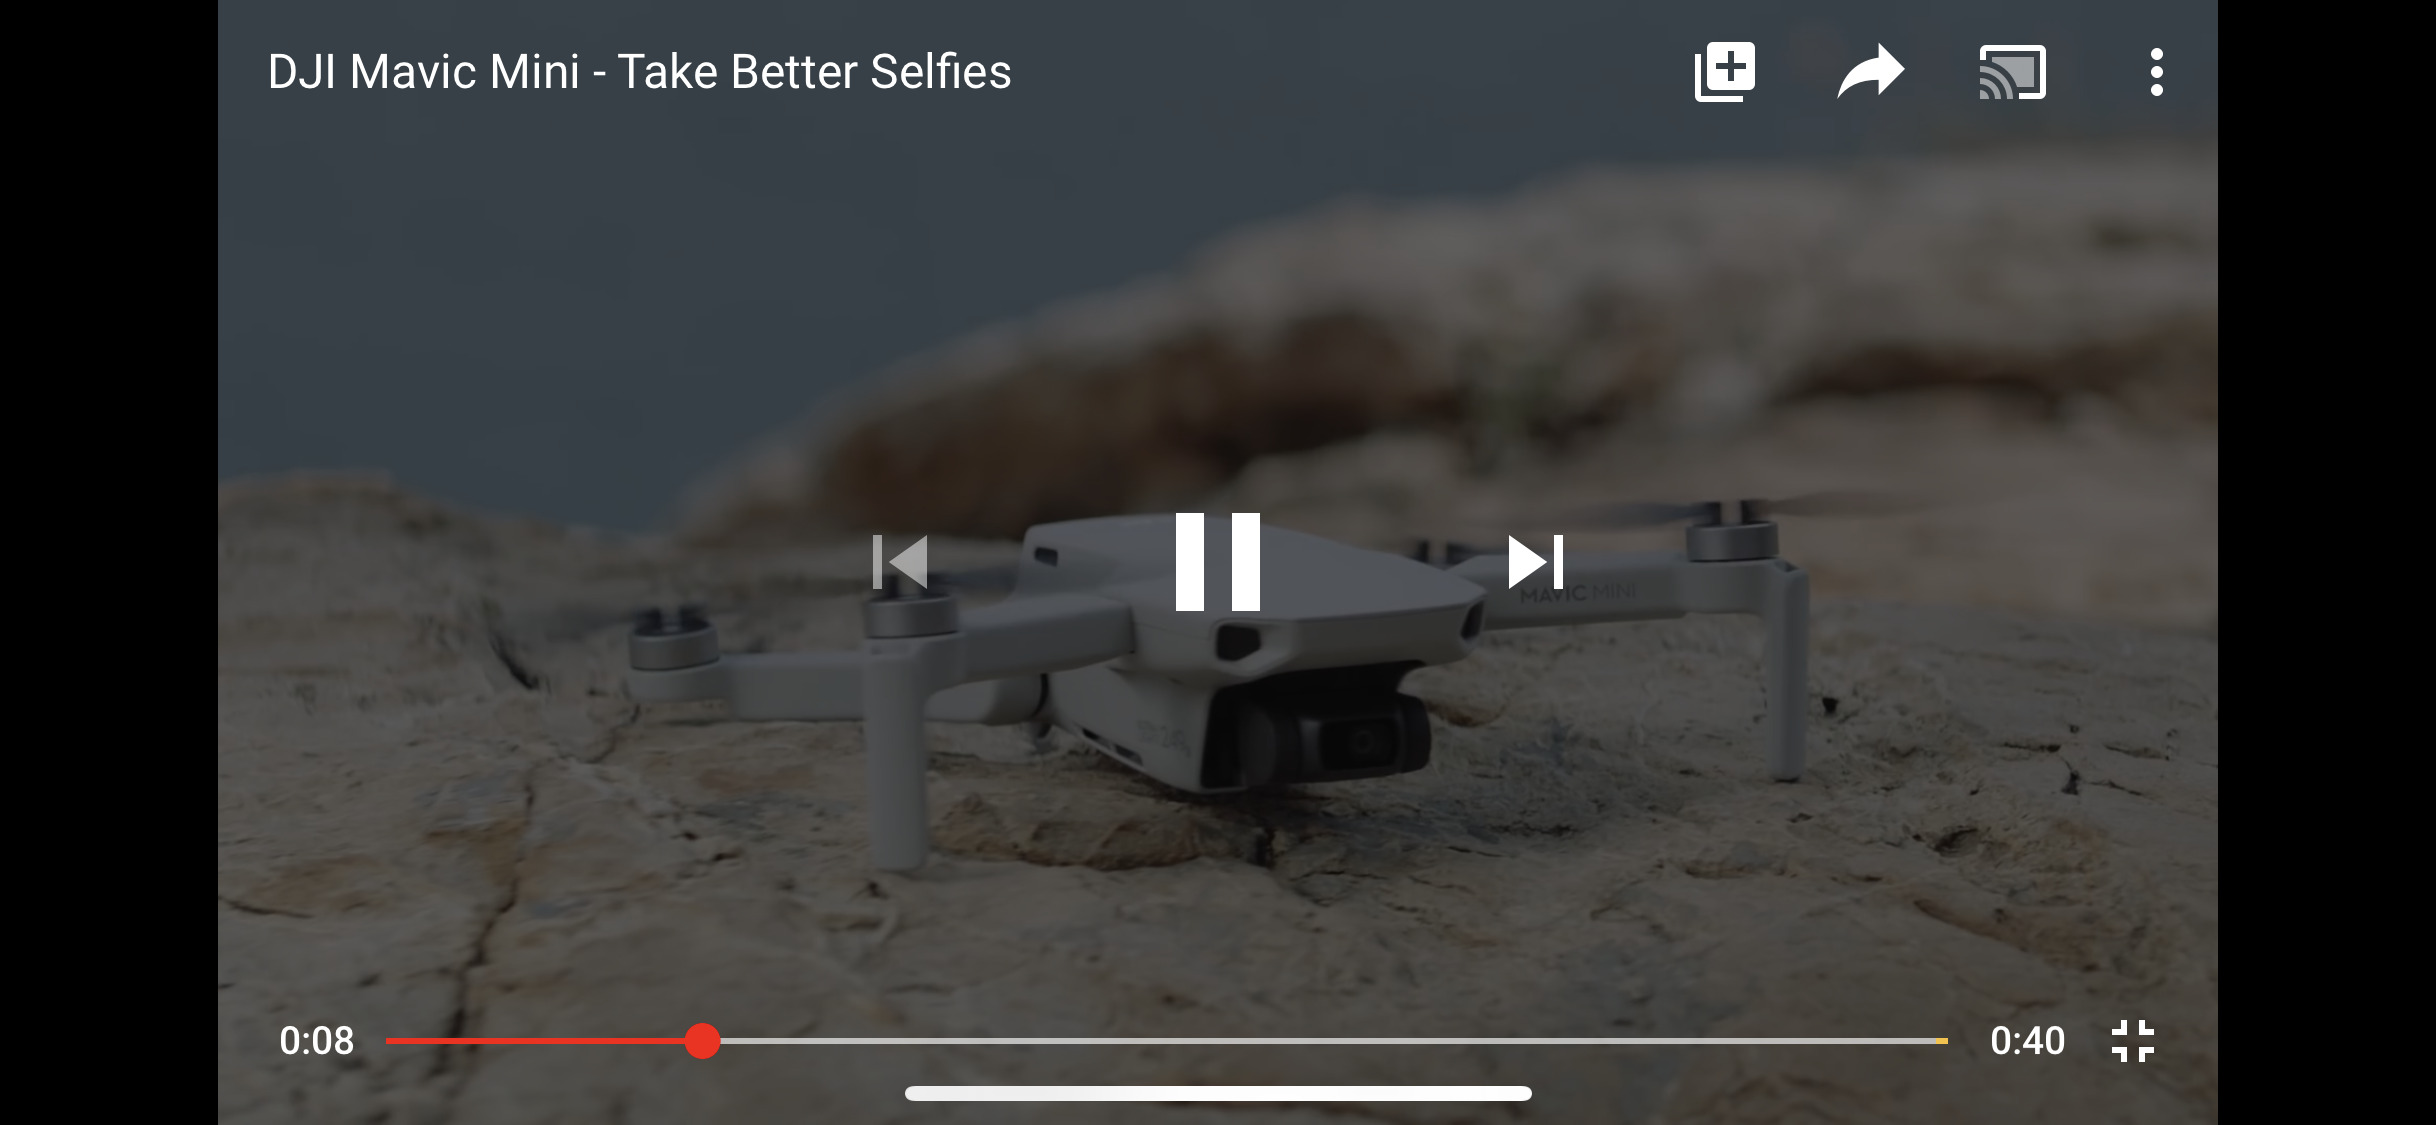 DJIがMavic Mini紹介動画をYouTubeに追加！マビックミニでセルフィーをもっと手軽、身近に、より良く。DJIドローンカメラ新作 2019